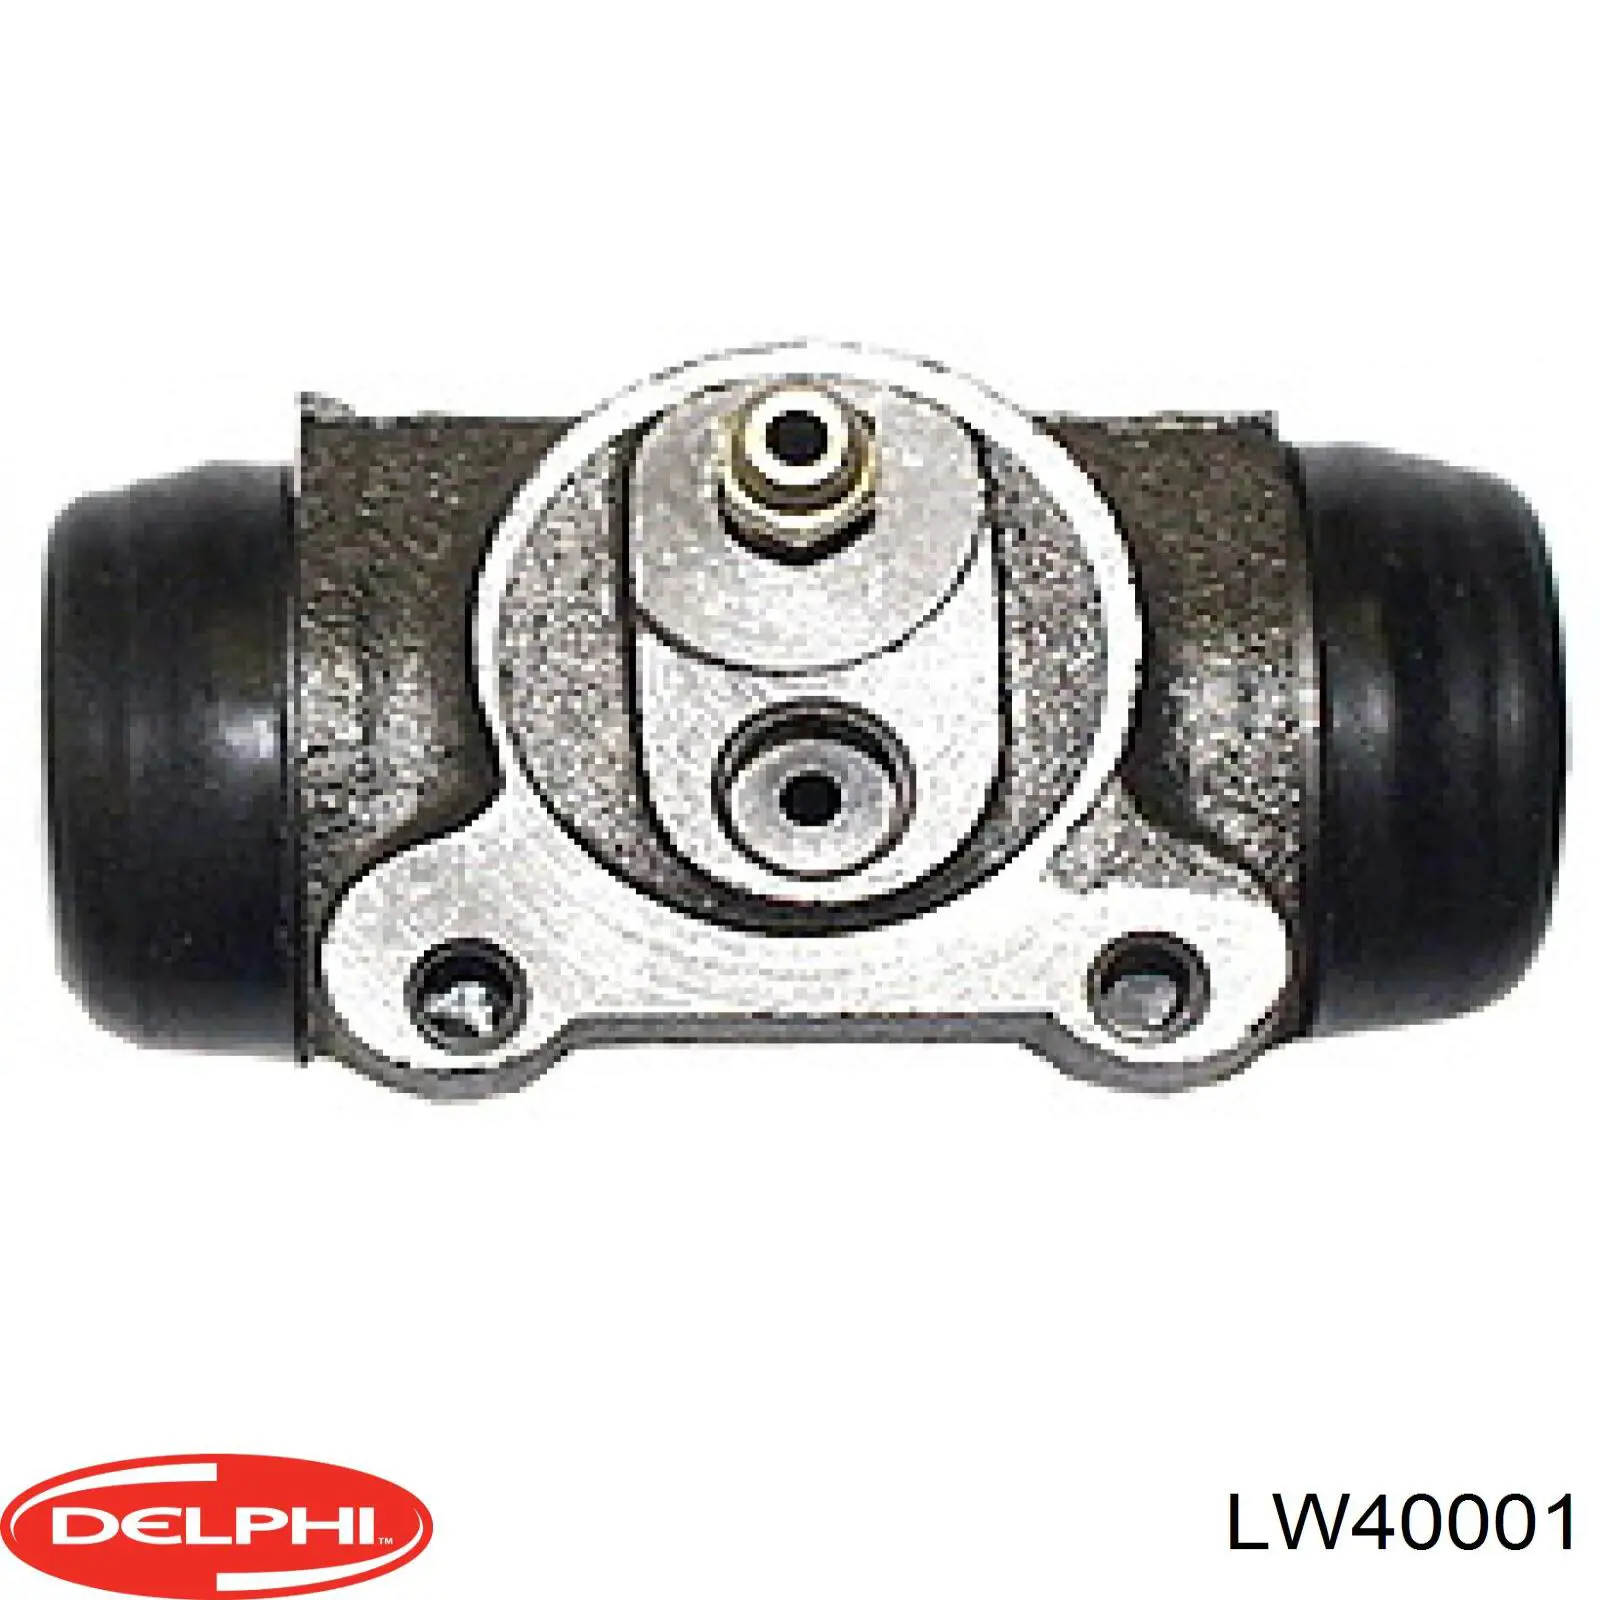 LW40001 Delphi cilindro de freno de rueda trasero